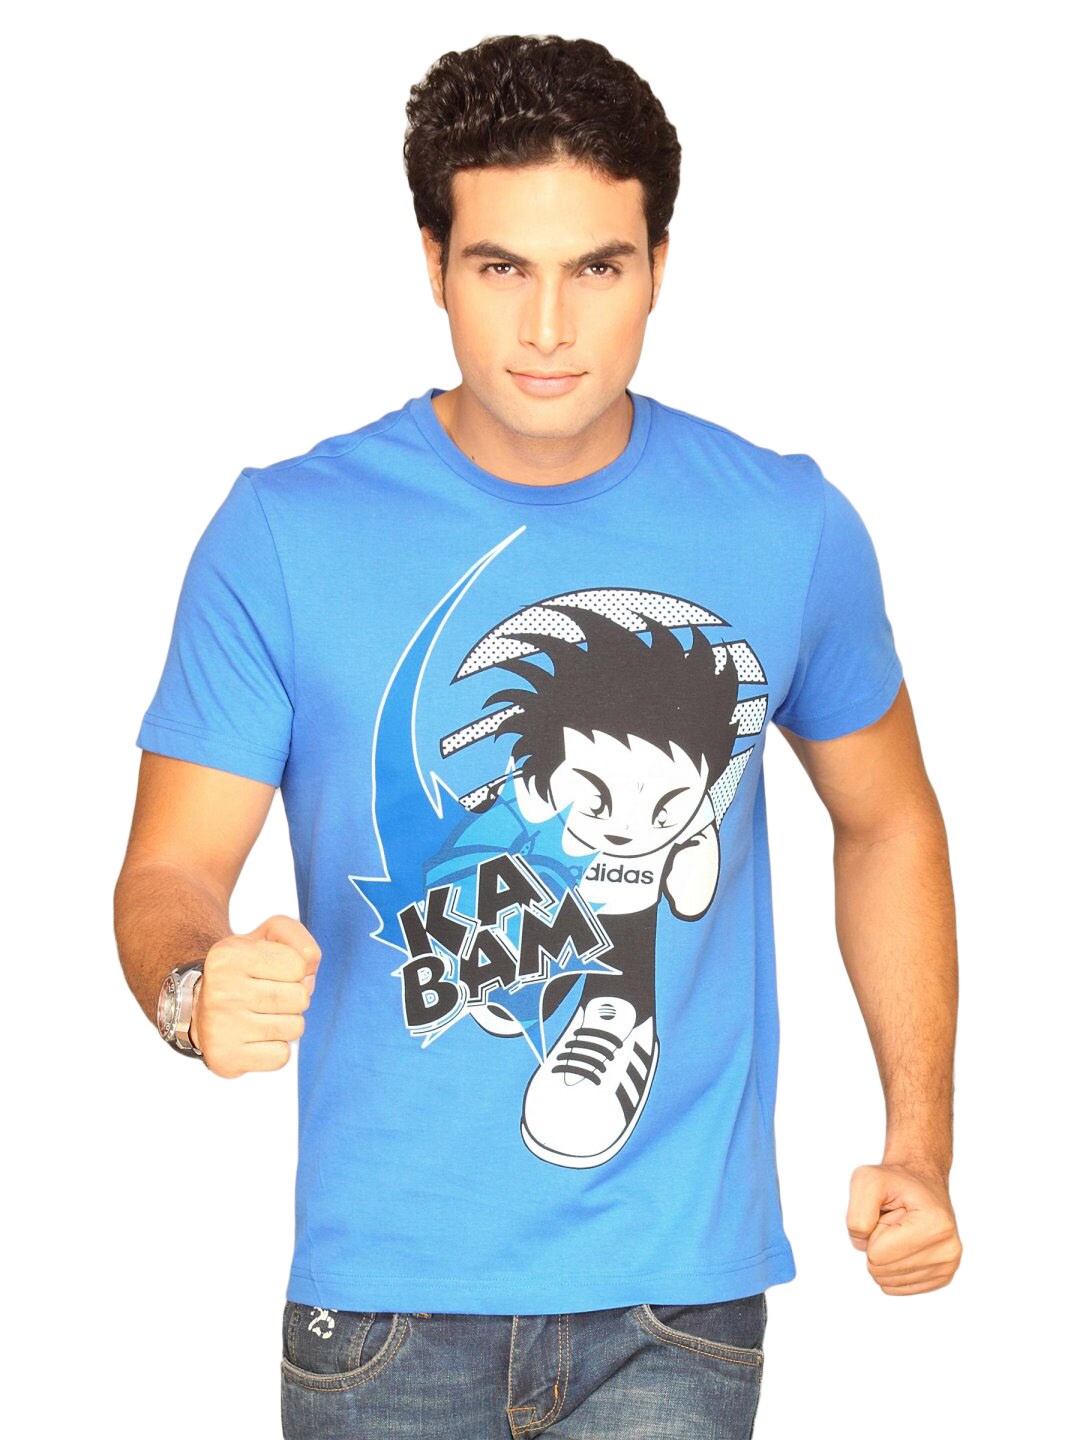 ADIDAS Men's Bam Blue T-shirt